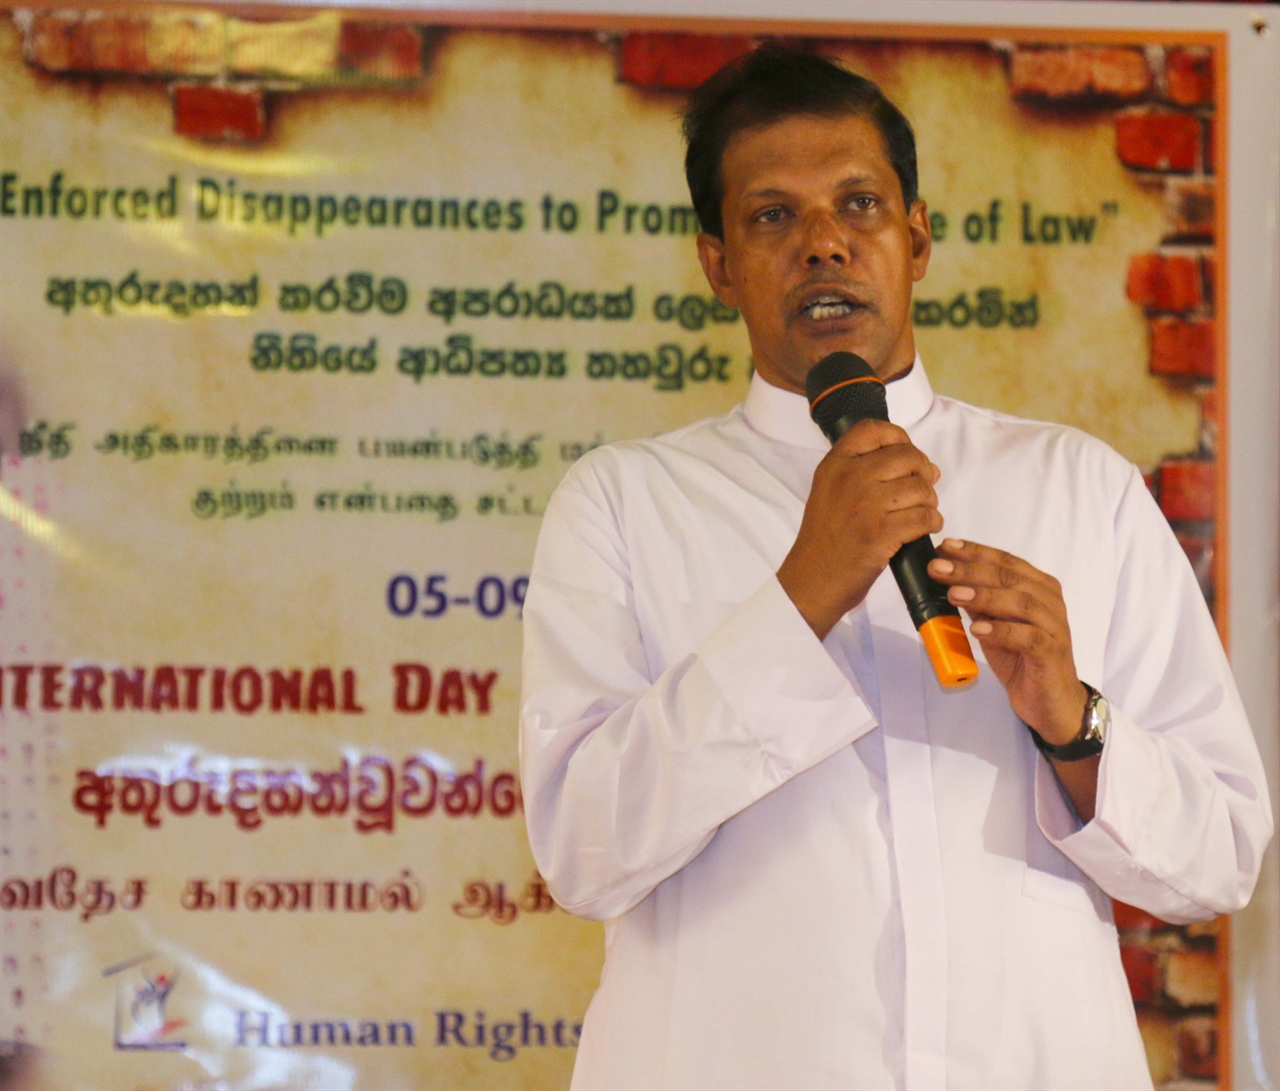 스리랑카 인권 활동가인 난다나 마나퉁가(Nandana Manatunga) 신부님이 현재 스리랑카의 강제실종에 대해 이야기 하고 있다.